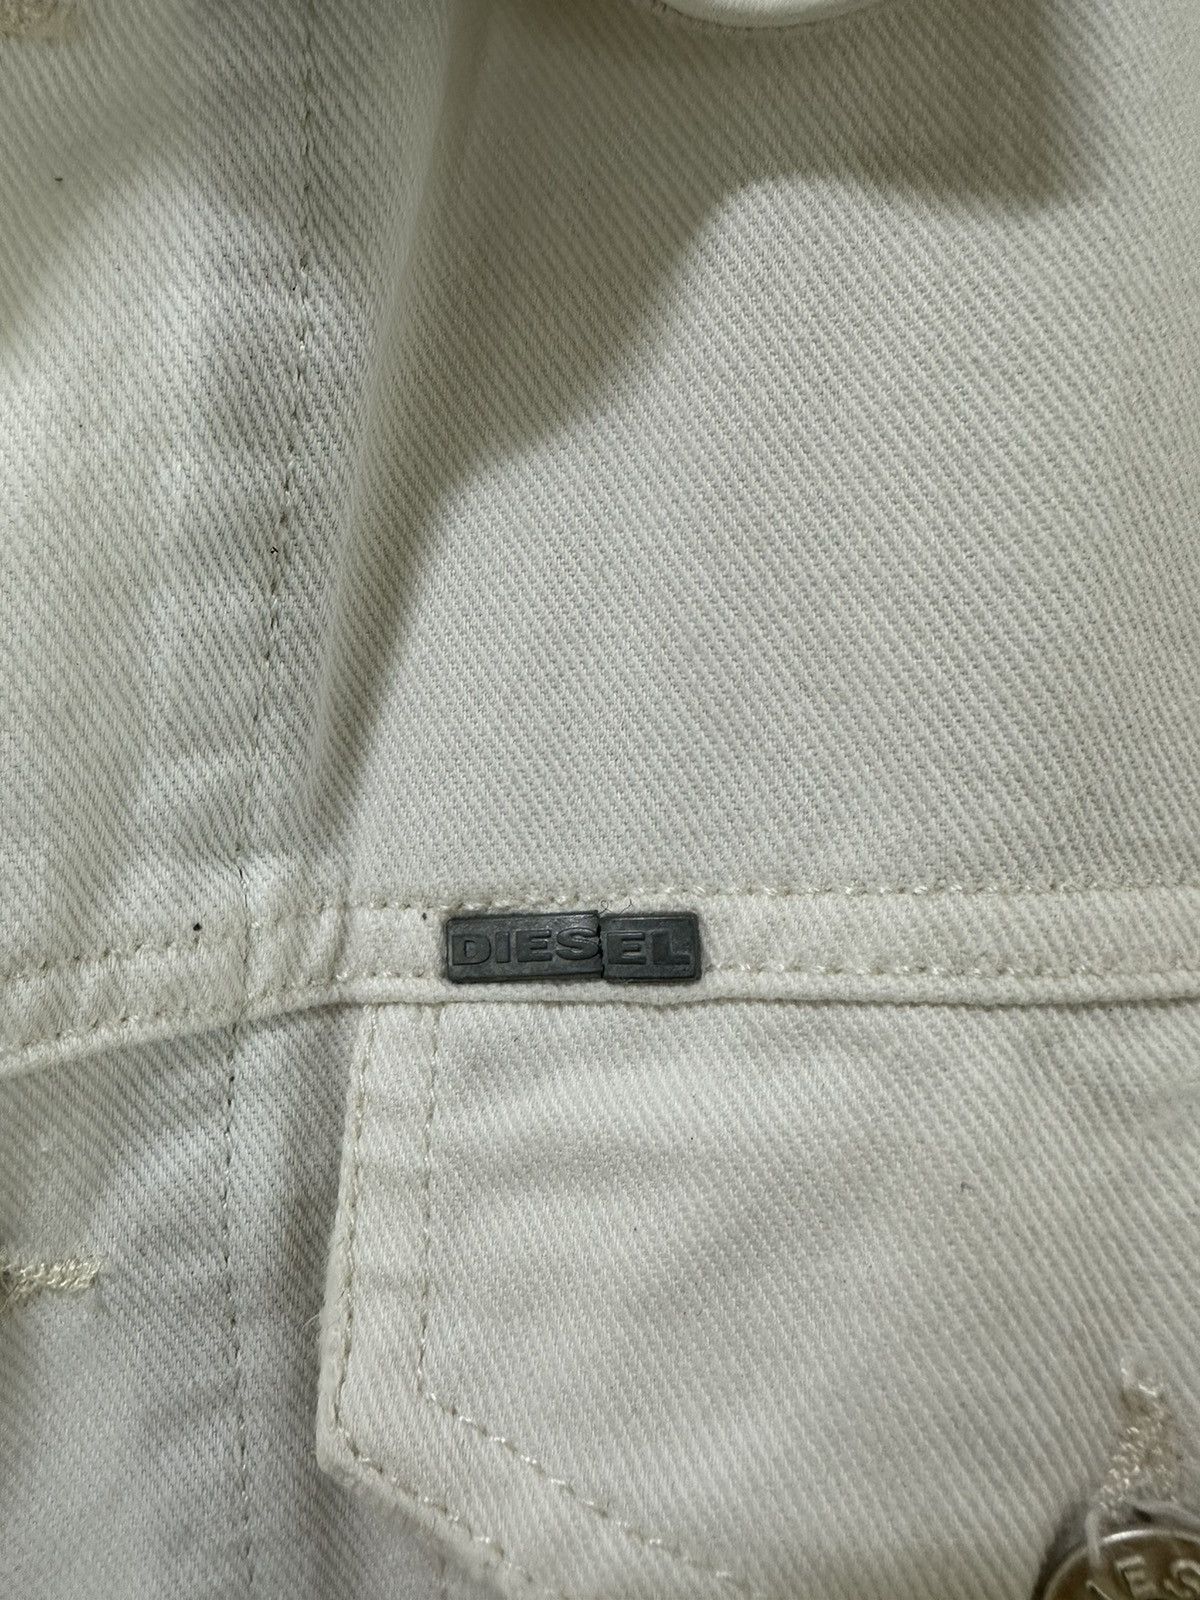 Diesel White Denim Type 3 Design Leather Collar - 9